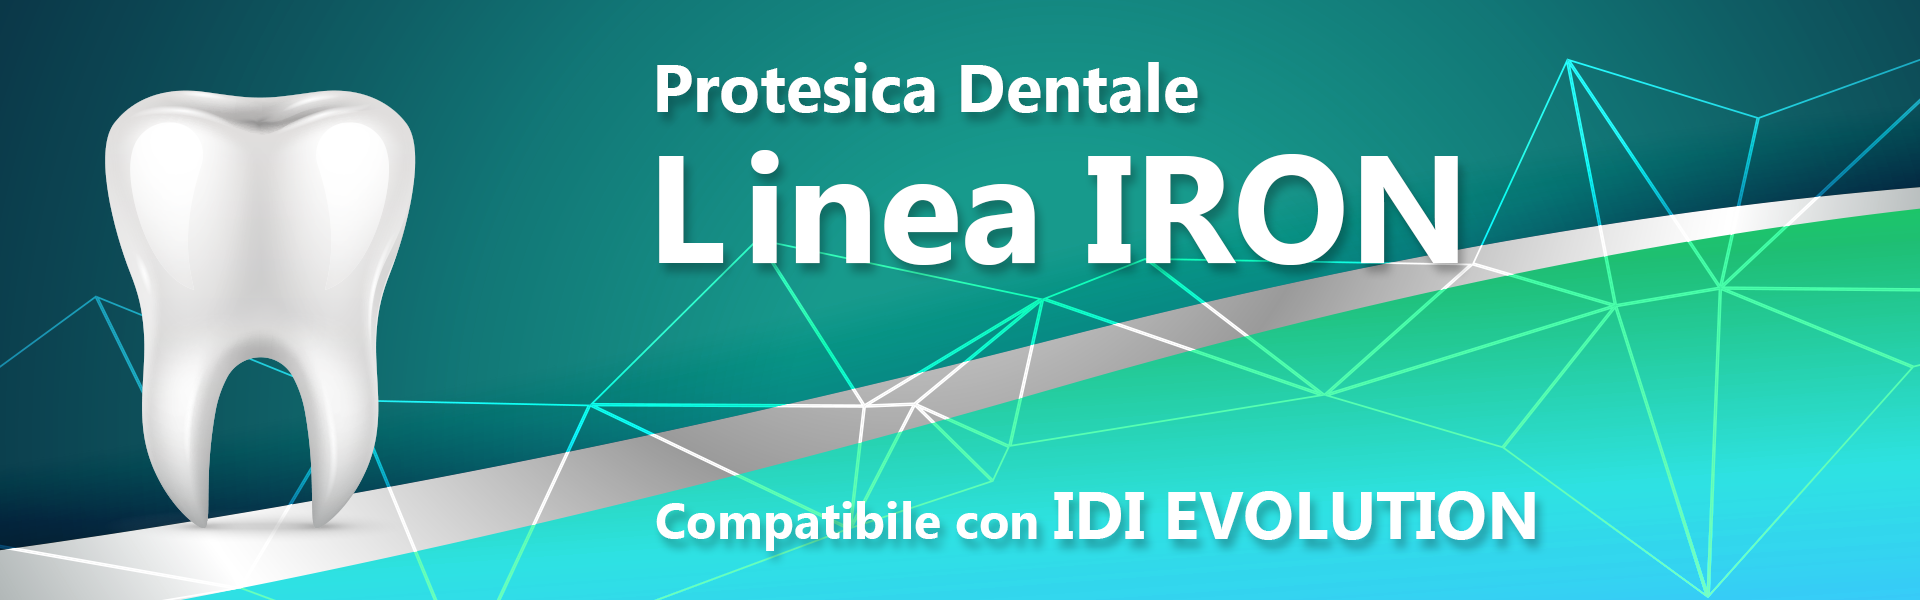 Linea IRON (compatibile con IDI EVOLUTION)